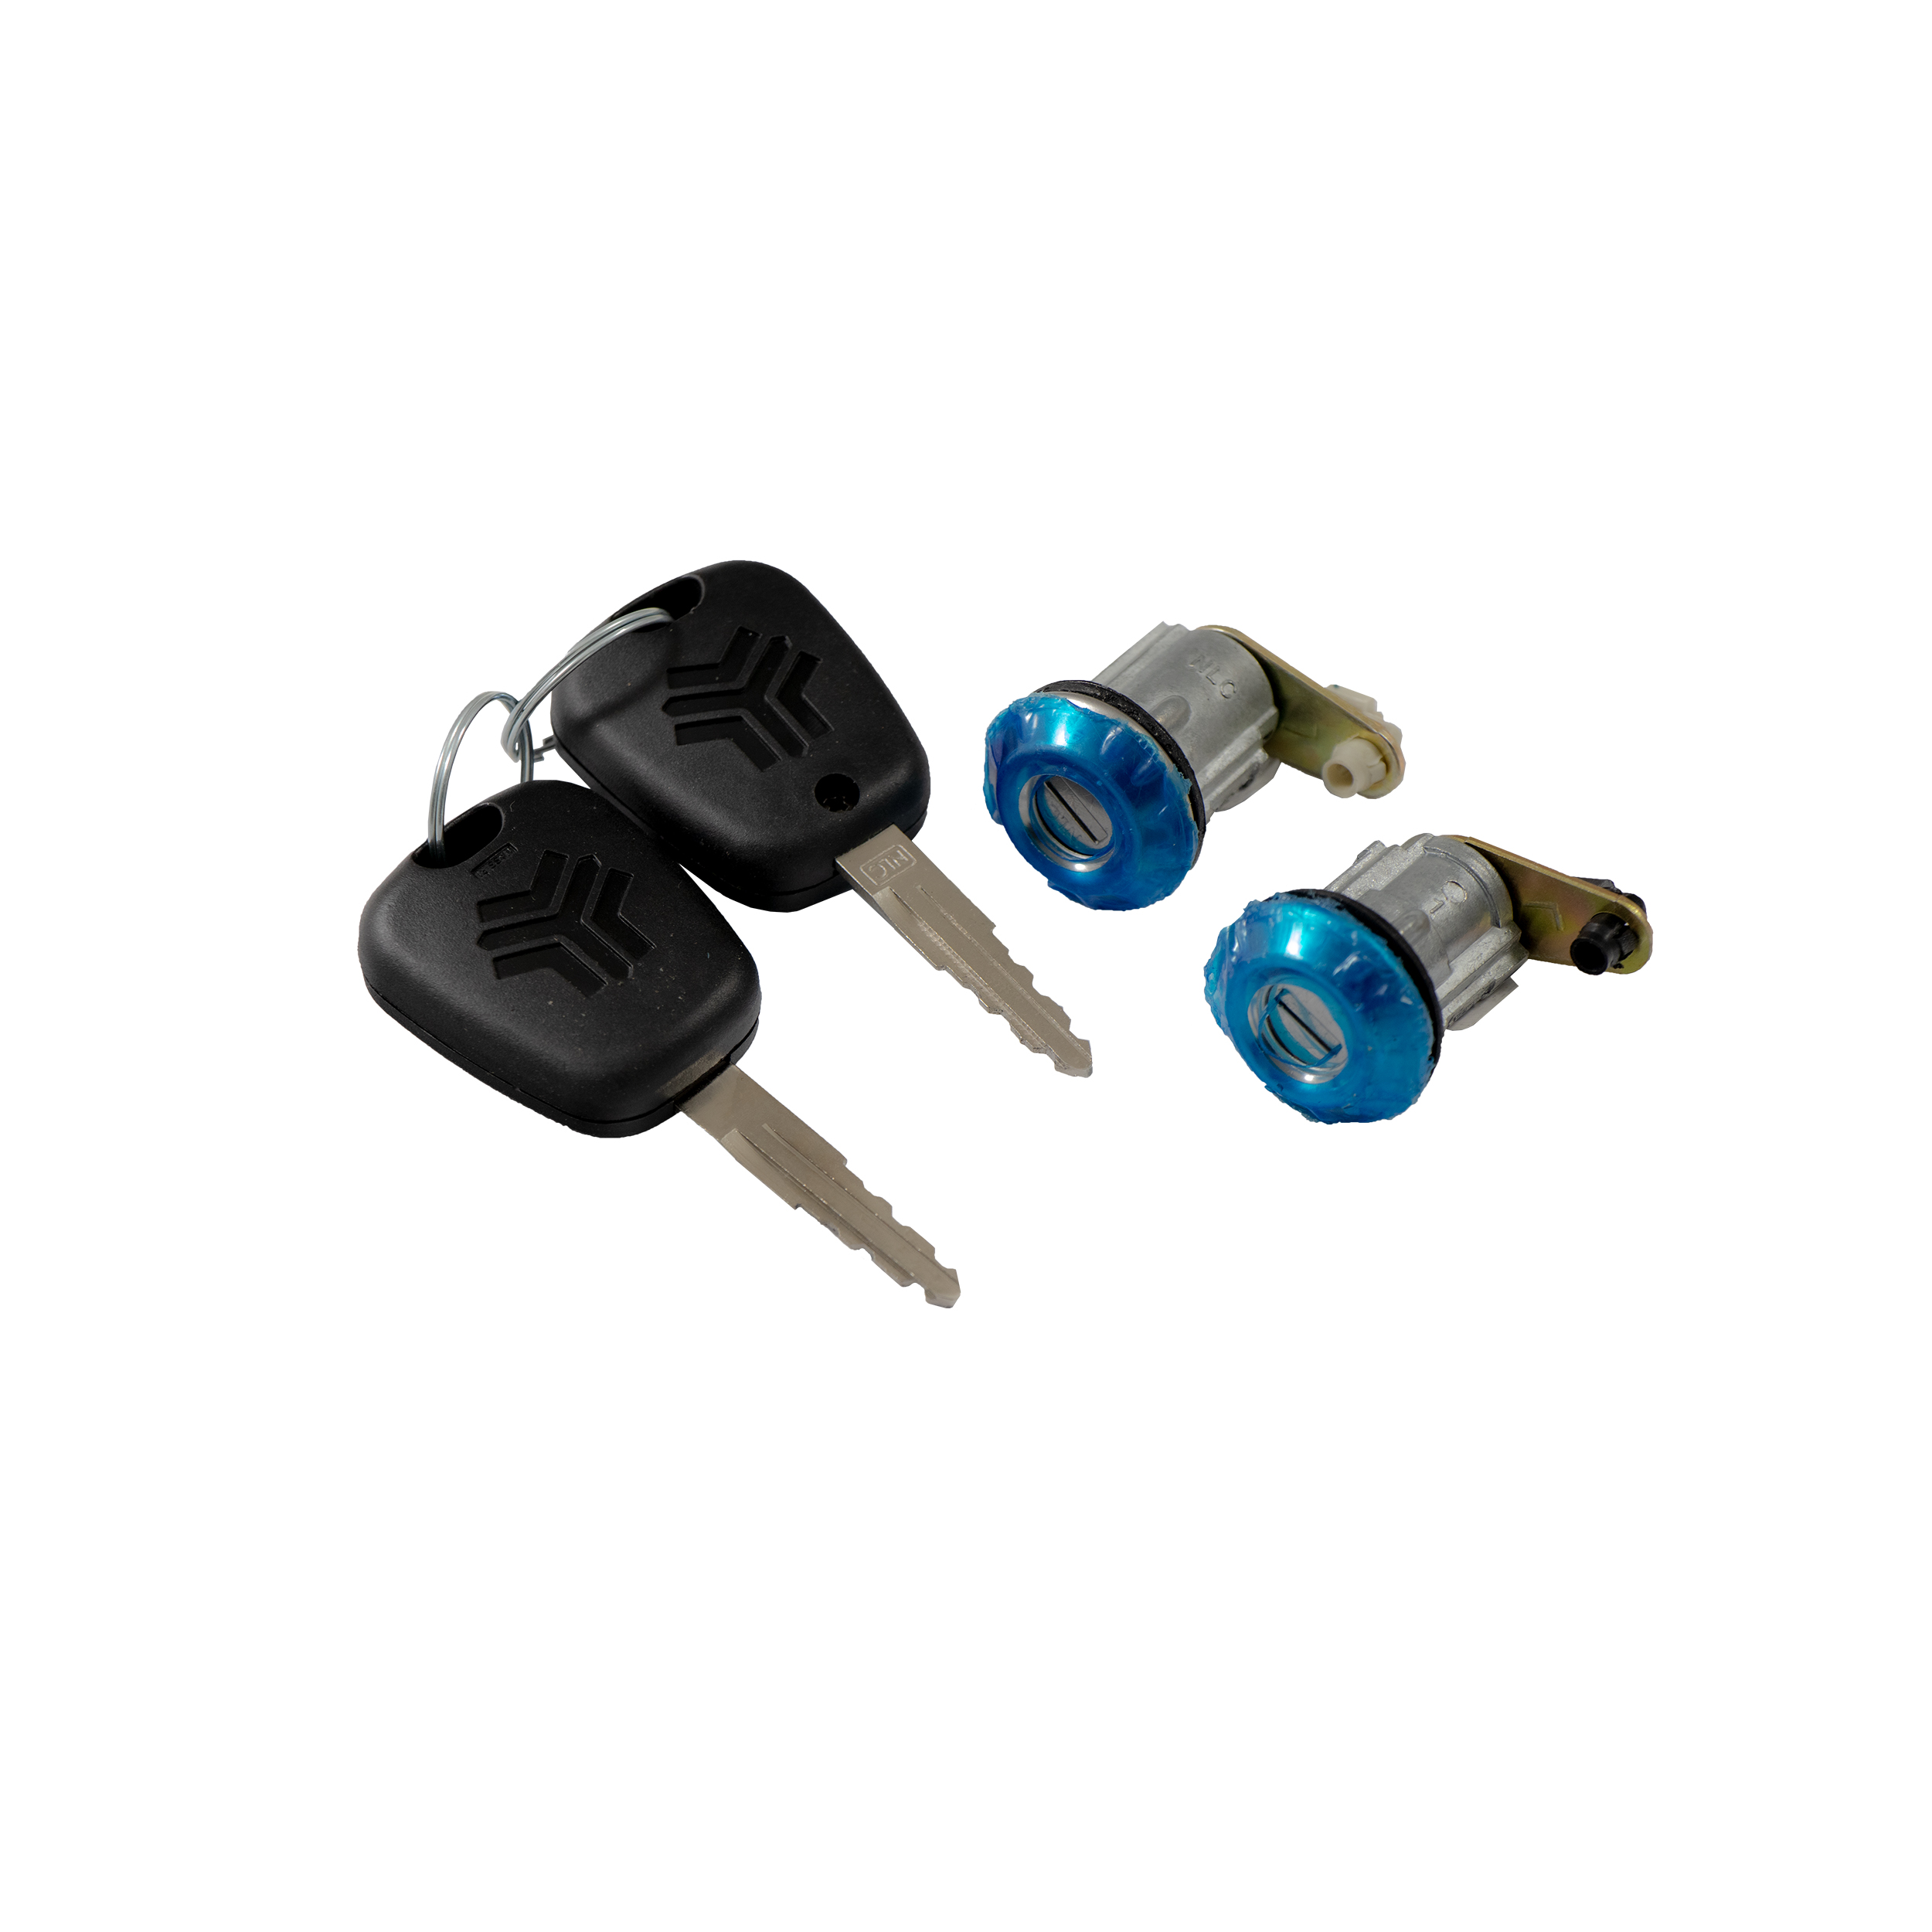 قفل سوئیچی دوکفه ای درب خودرو فابریک پارت مدل 44033 مناسب برای پراید